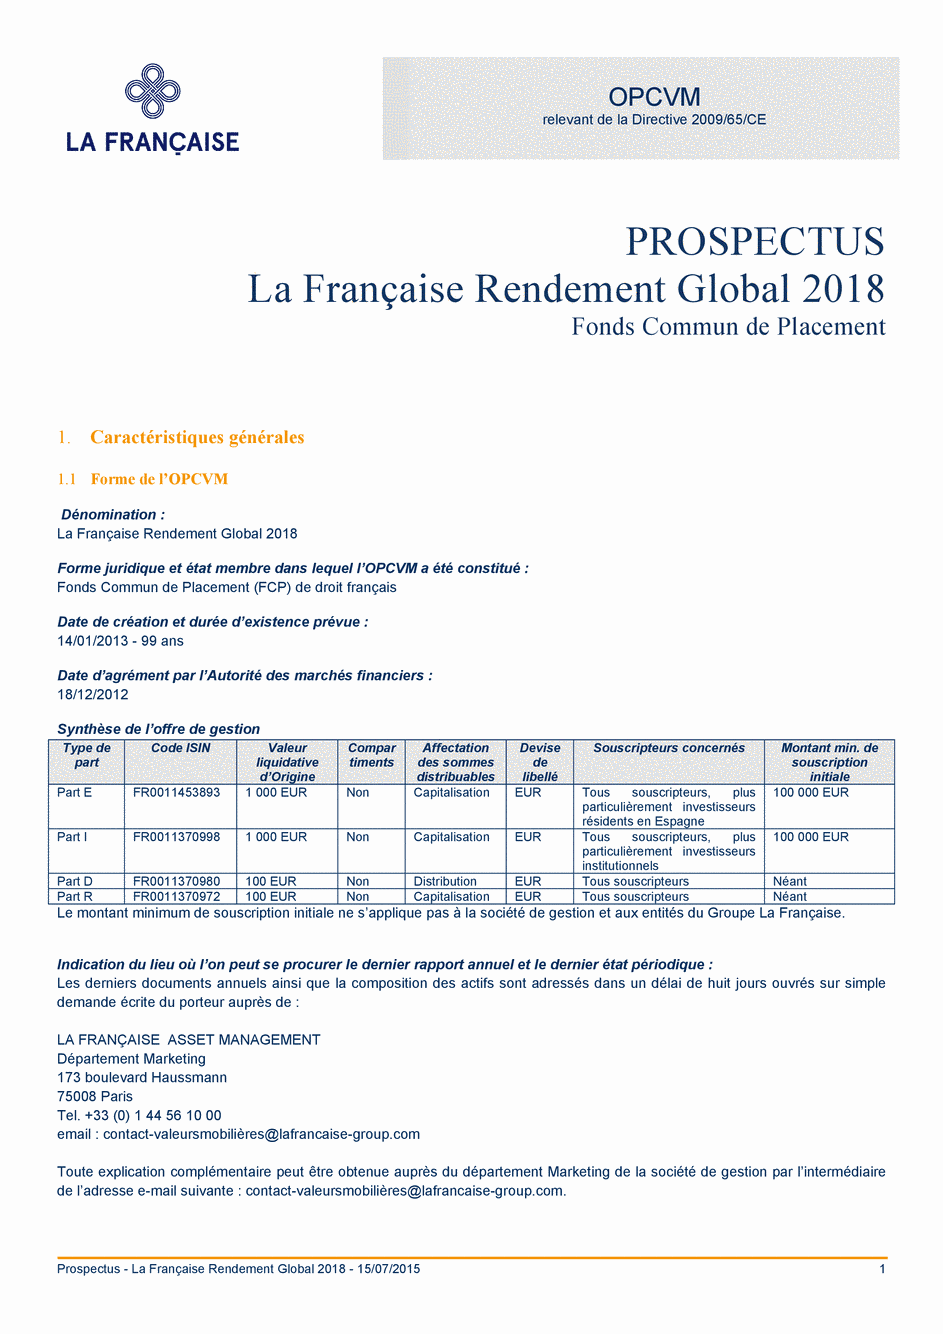 Prospectus LA FRANÇAISE RENDEMENT GLOBAL 2018 Part R - 15/07/2015 - Français